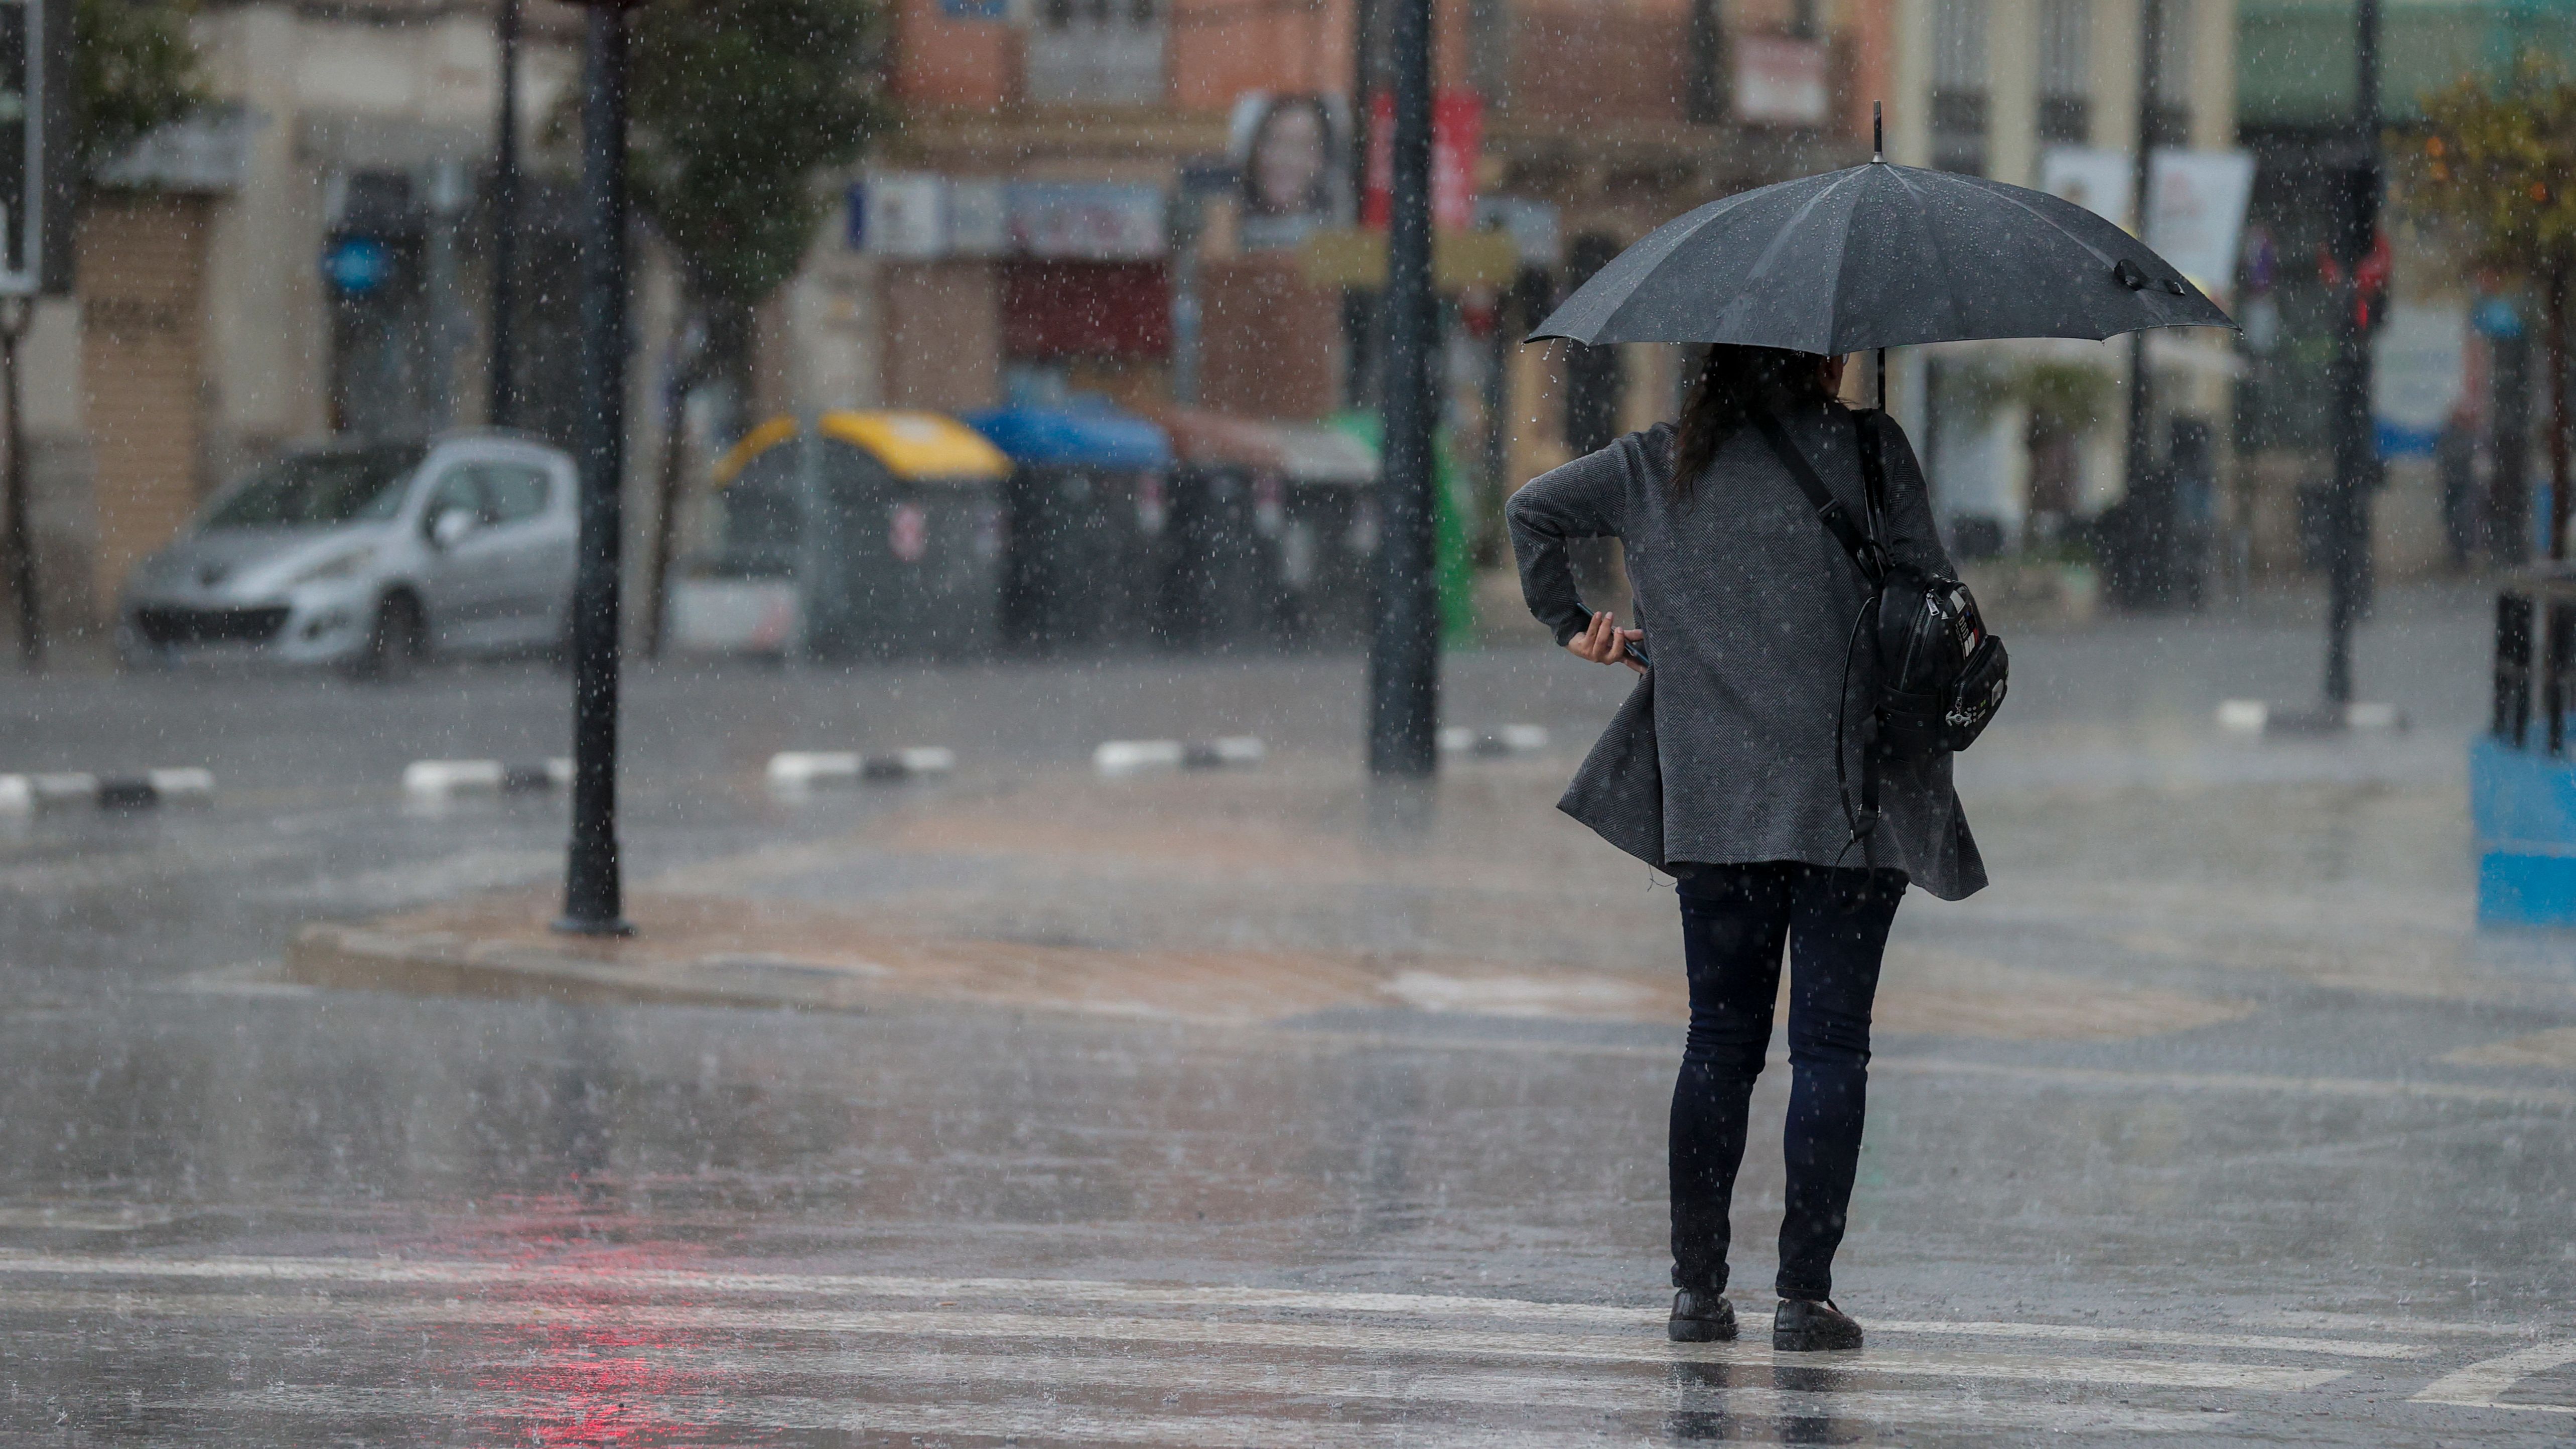 Llega otra DANA con fuertes lluvias para el este y centro de España